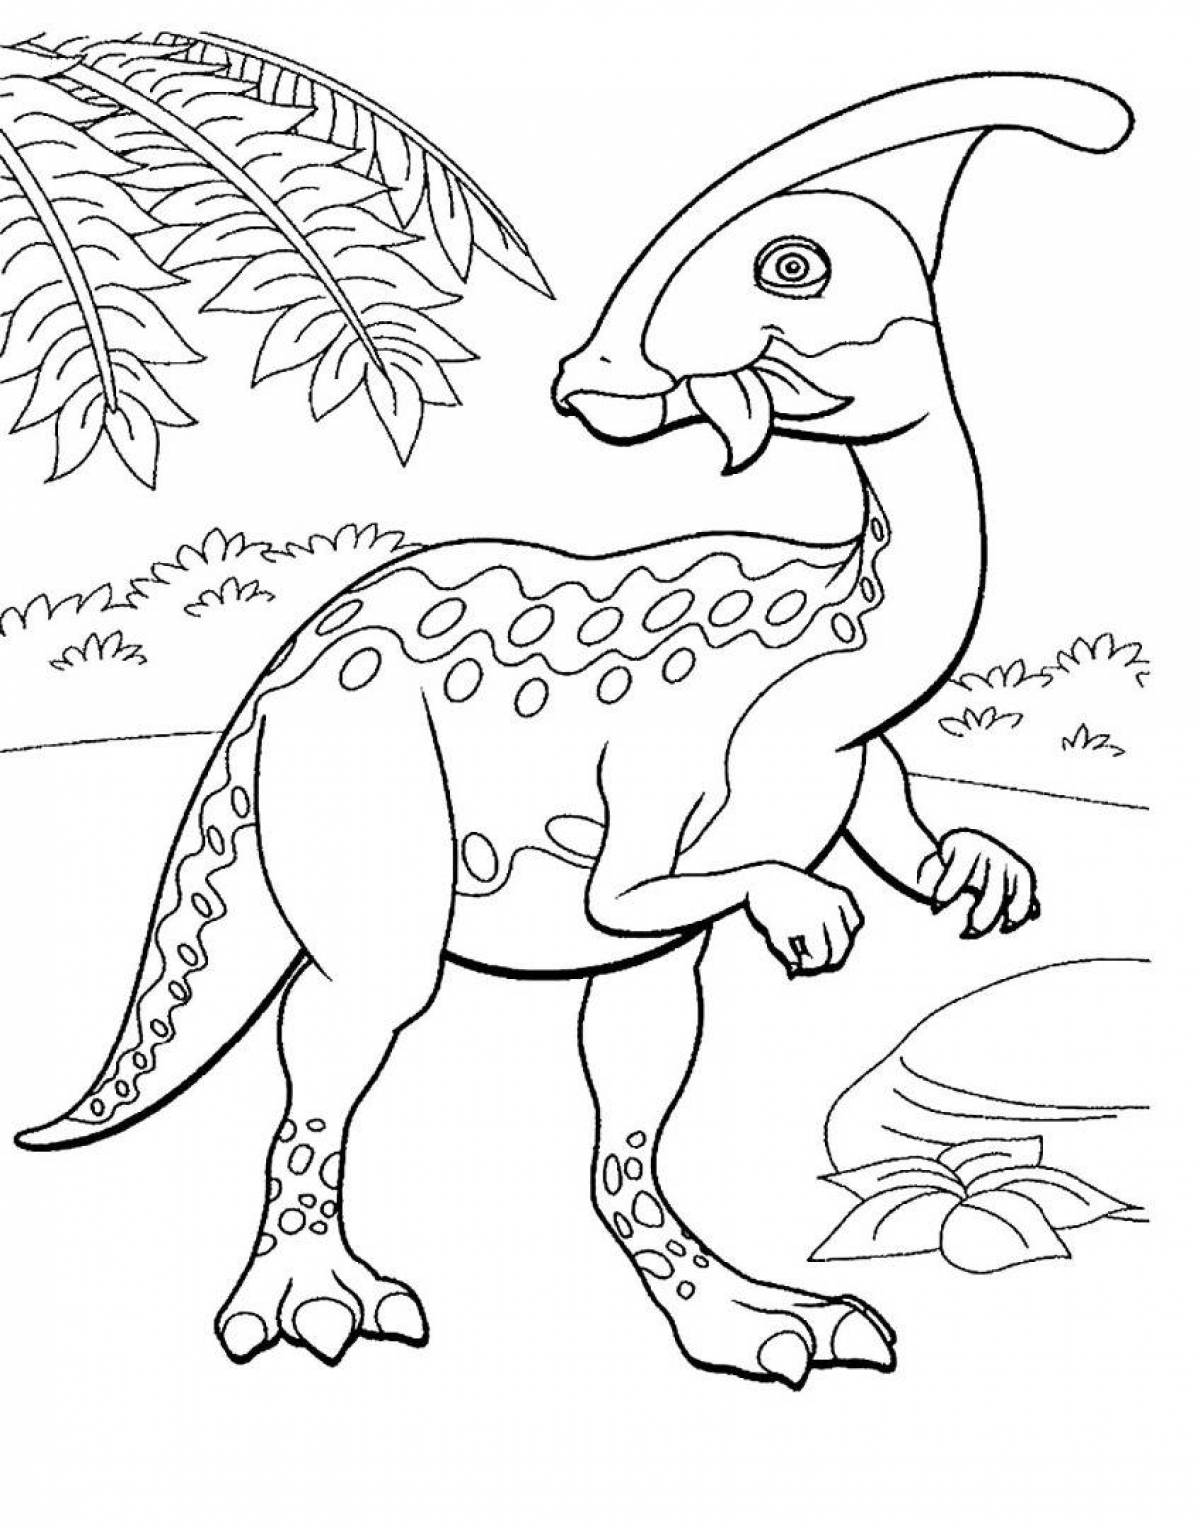 Динозавры раскраска а4. Дино раскраска динозавры. Перри Паразауролоф. Динозавр раскраска для детей. Динозаврики раскраска для детей.